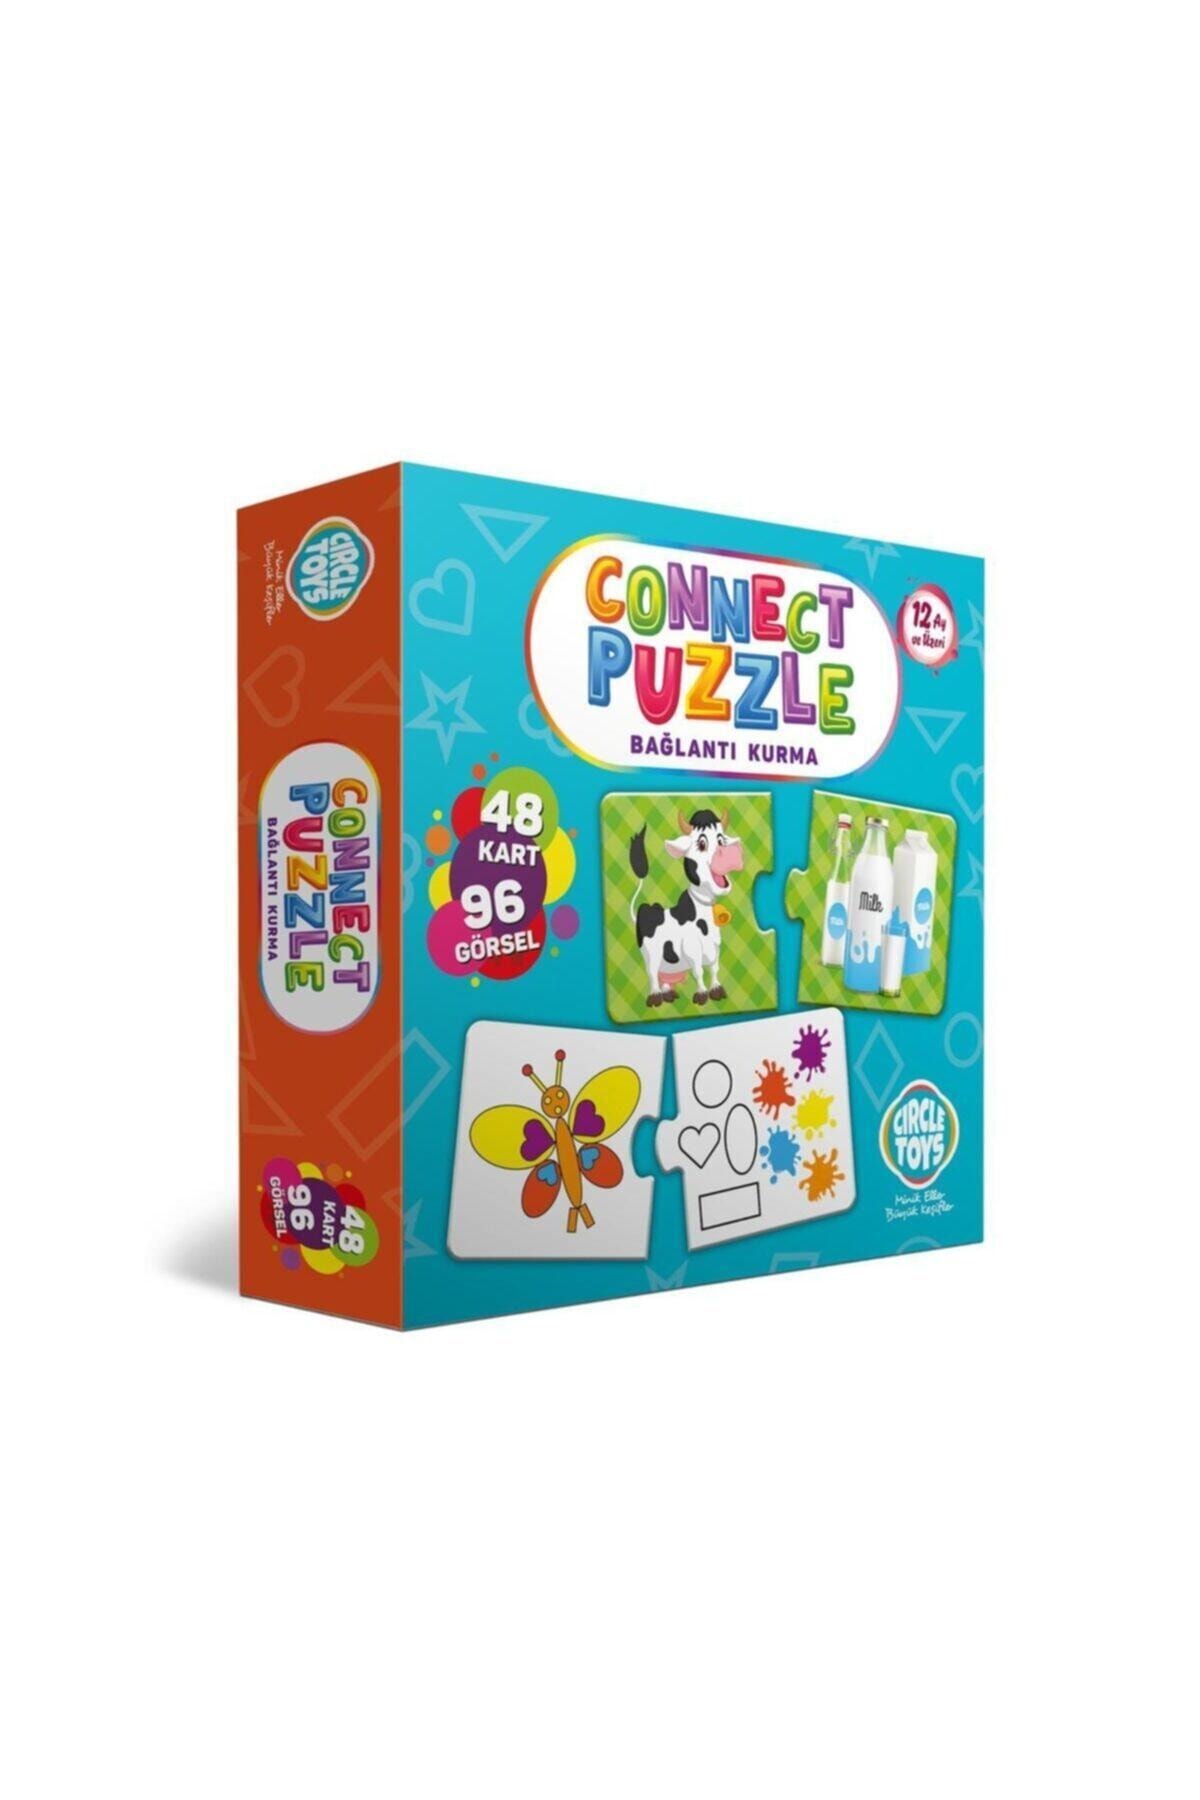 Connect Puzzle Bağlantı Kurma Oyunu Eşleştirme Kartları